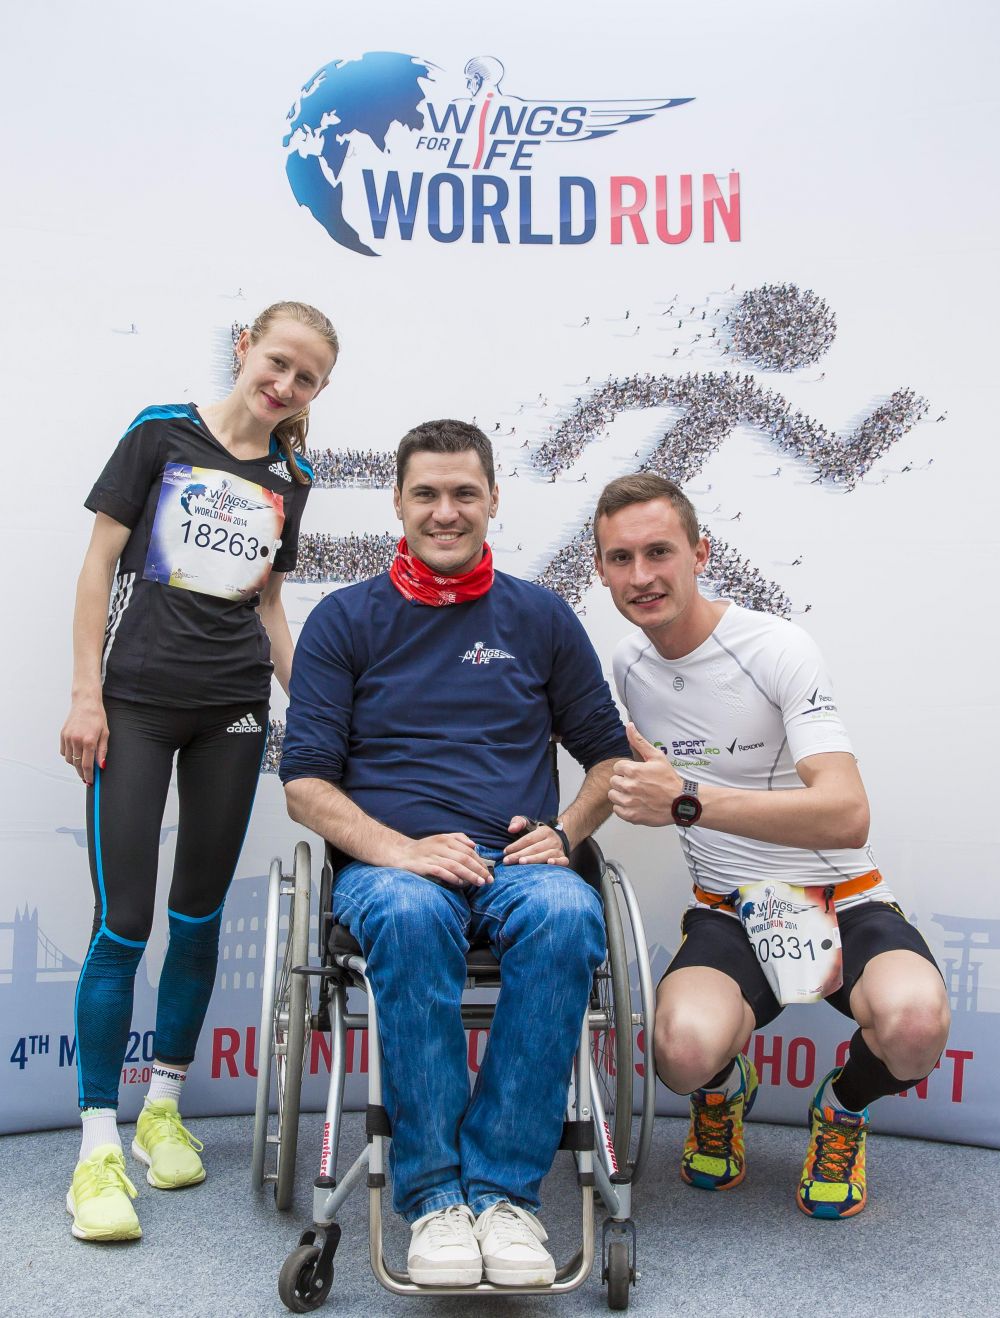 WINGS FOR LIFE - Alergam pentru cei care nu pot! | Duminica 3 mai - Felix Baumgartner vine in Romania pentru ultramaratonul lumii!_2